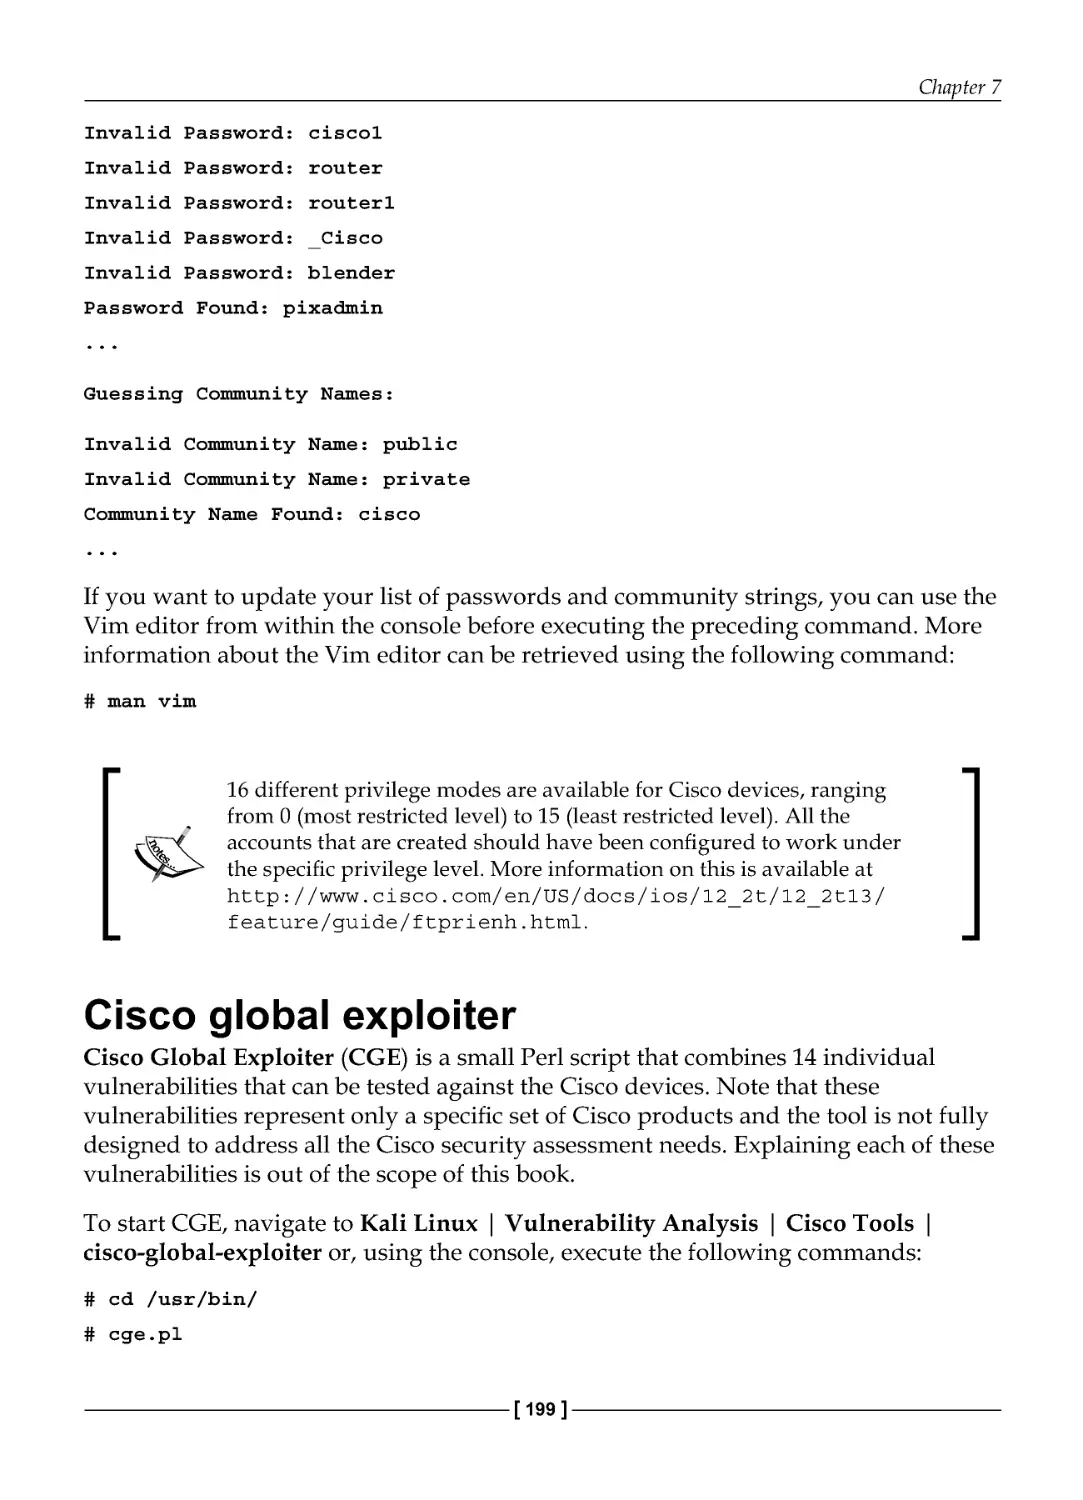 Cisco global exploiter